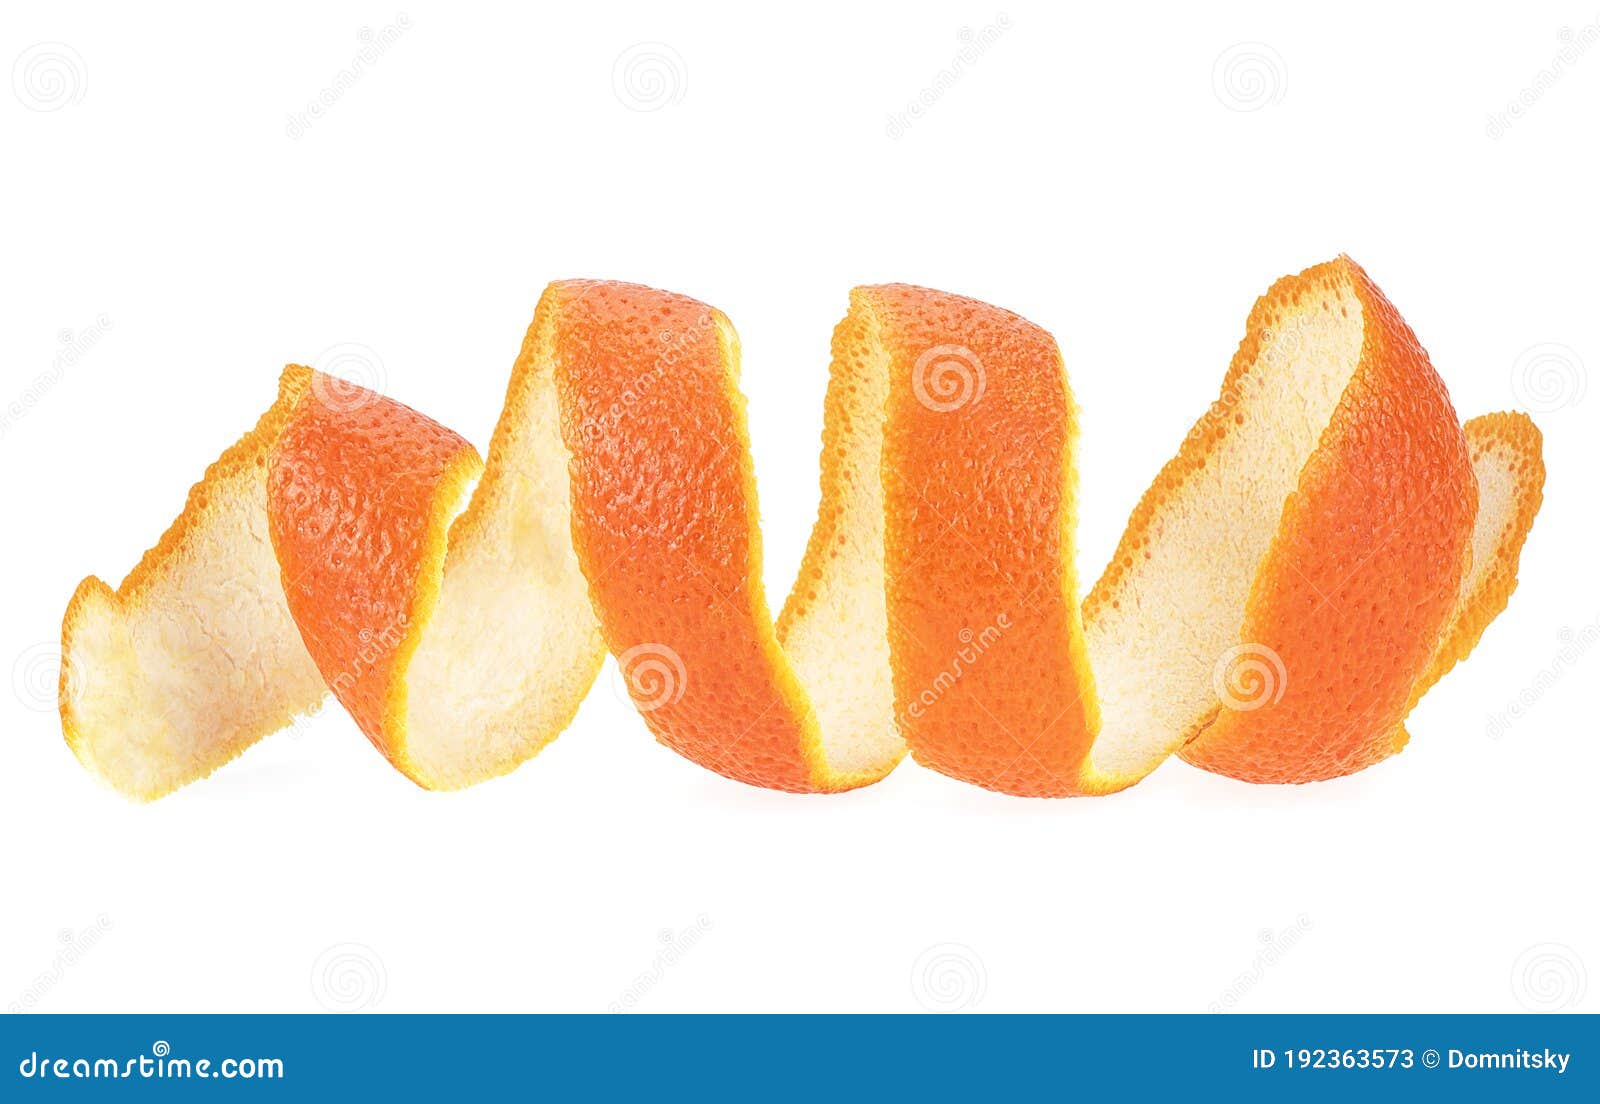 Vỏ cam: Những dải vỏ cam xoắn nổi bật trên nền trắng làm nổi bật vẻ đẹp riêng của một loại hoa quả quen thuộc. Hãy chiêm ngưỡng và khám phá sự độc đáo của chi tiết nhỏ này với các hình ảnh chất lượng cao.